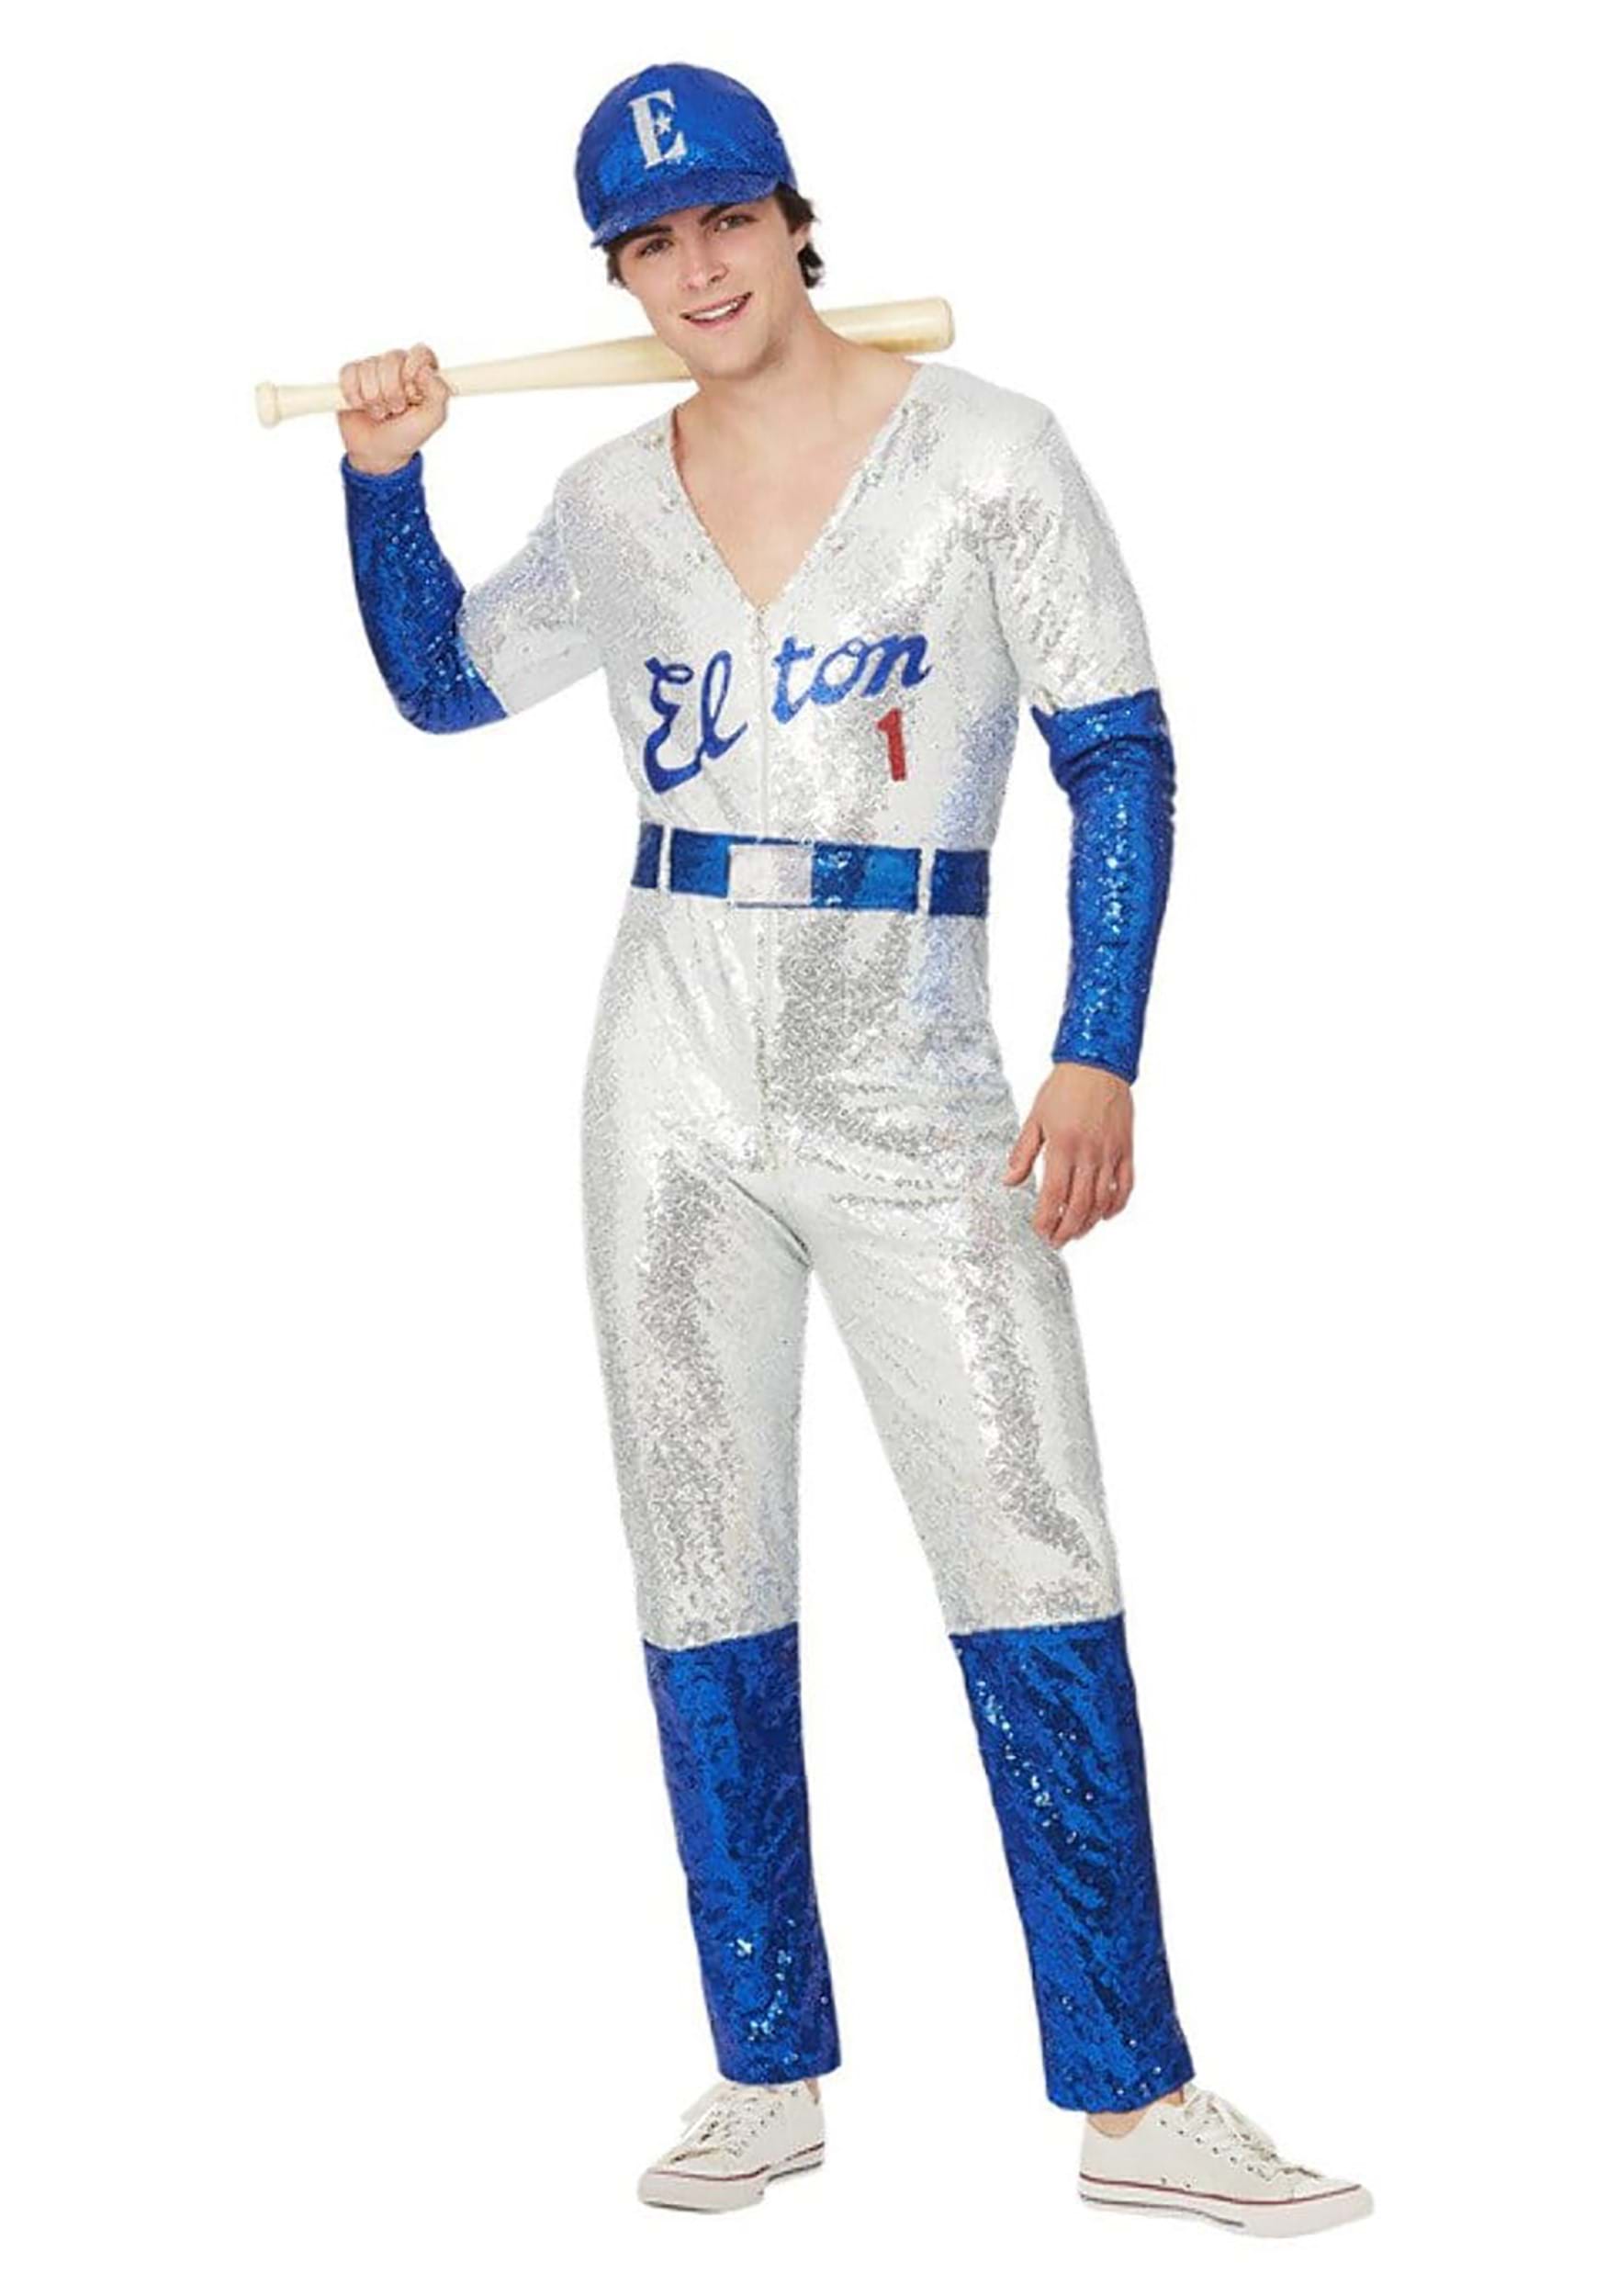 Photos - Fancy Dress John Smiffys Elton  Deluxe Sequin Baseball Men's Costume Blue/Gray SM51 